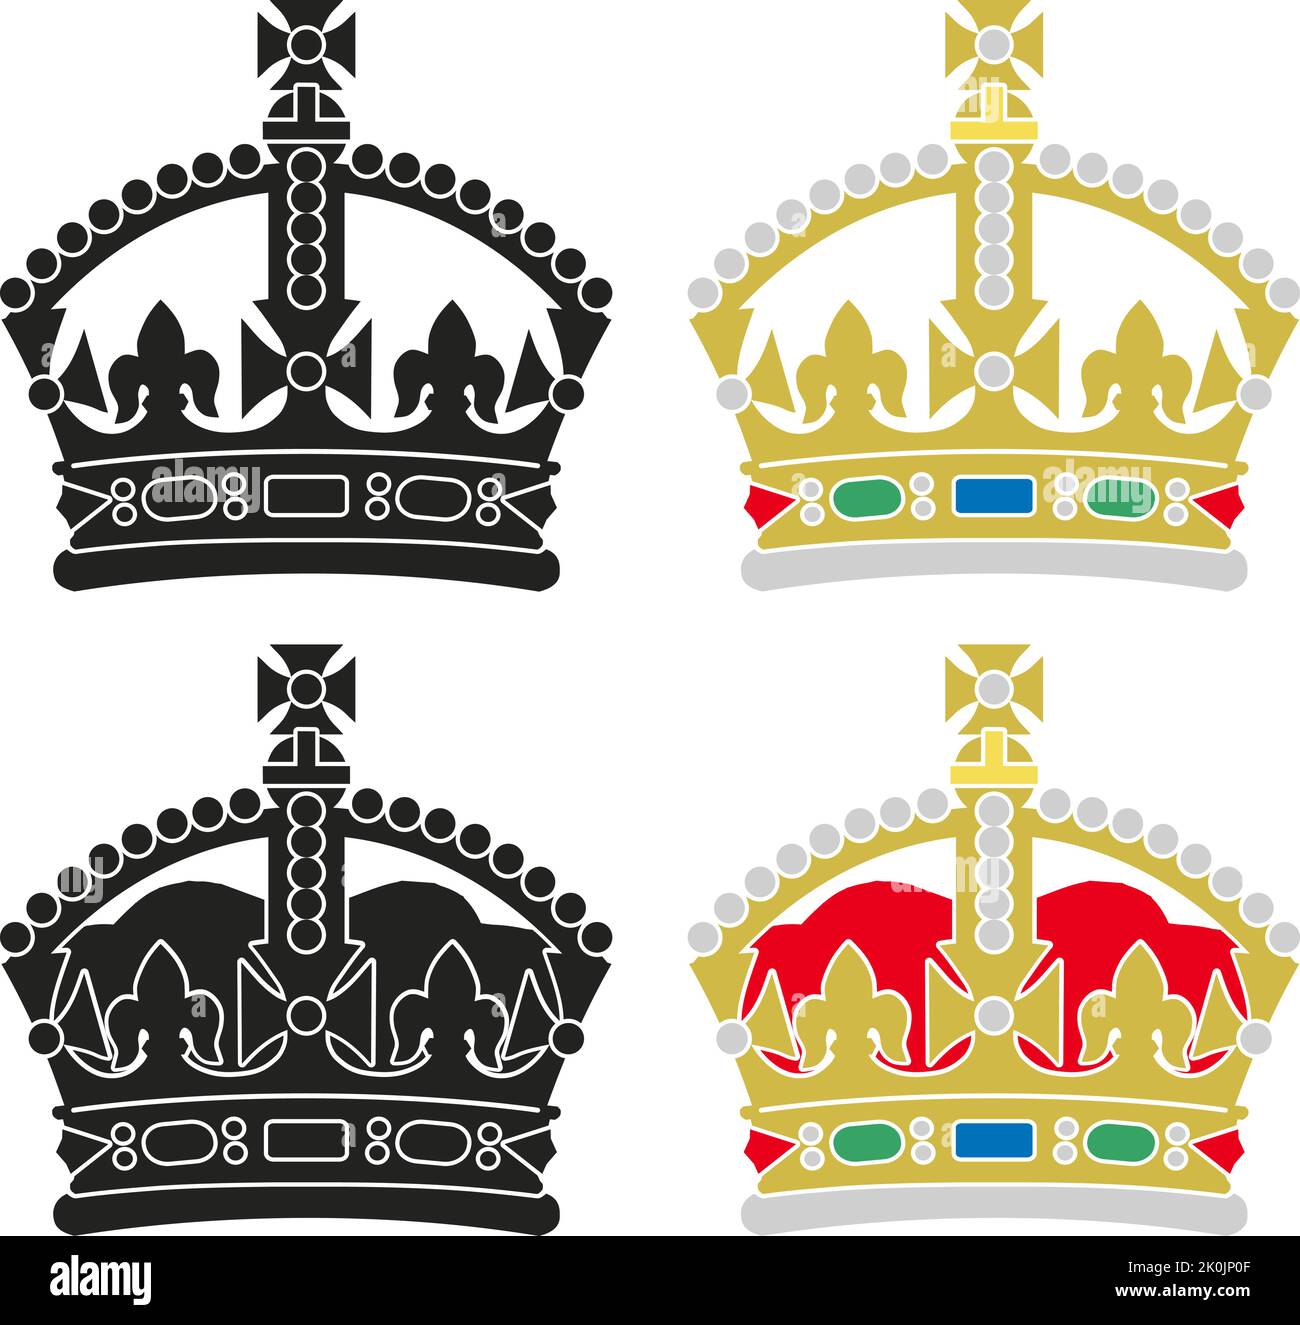 Stilisierte britische Tudor-Krone in Farbe und Schwarz-Weiß auf weißem Hintergrund, Großbritannien, Vektorgrafik Stock Vektor